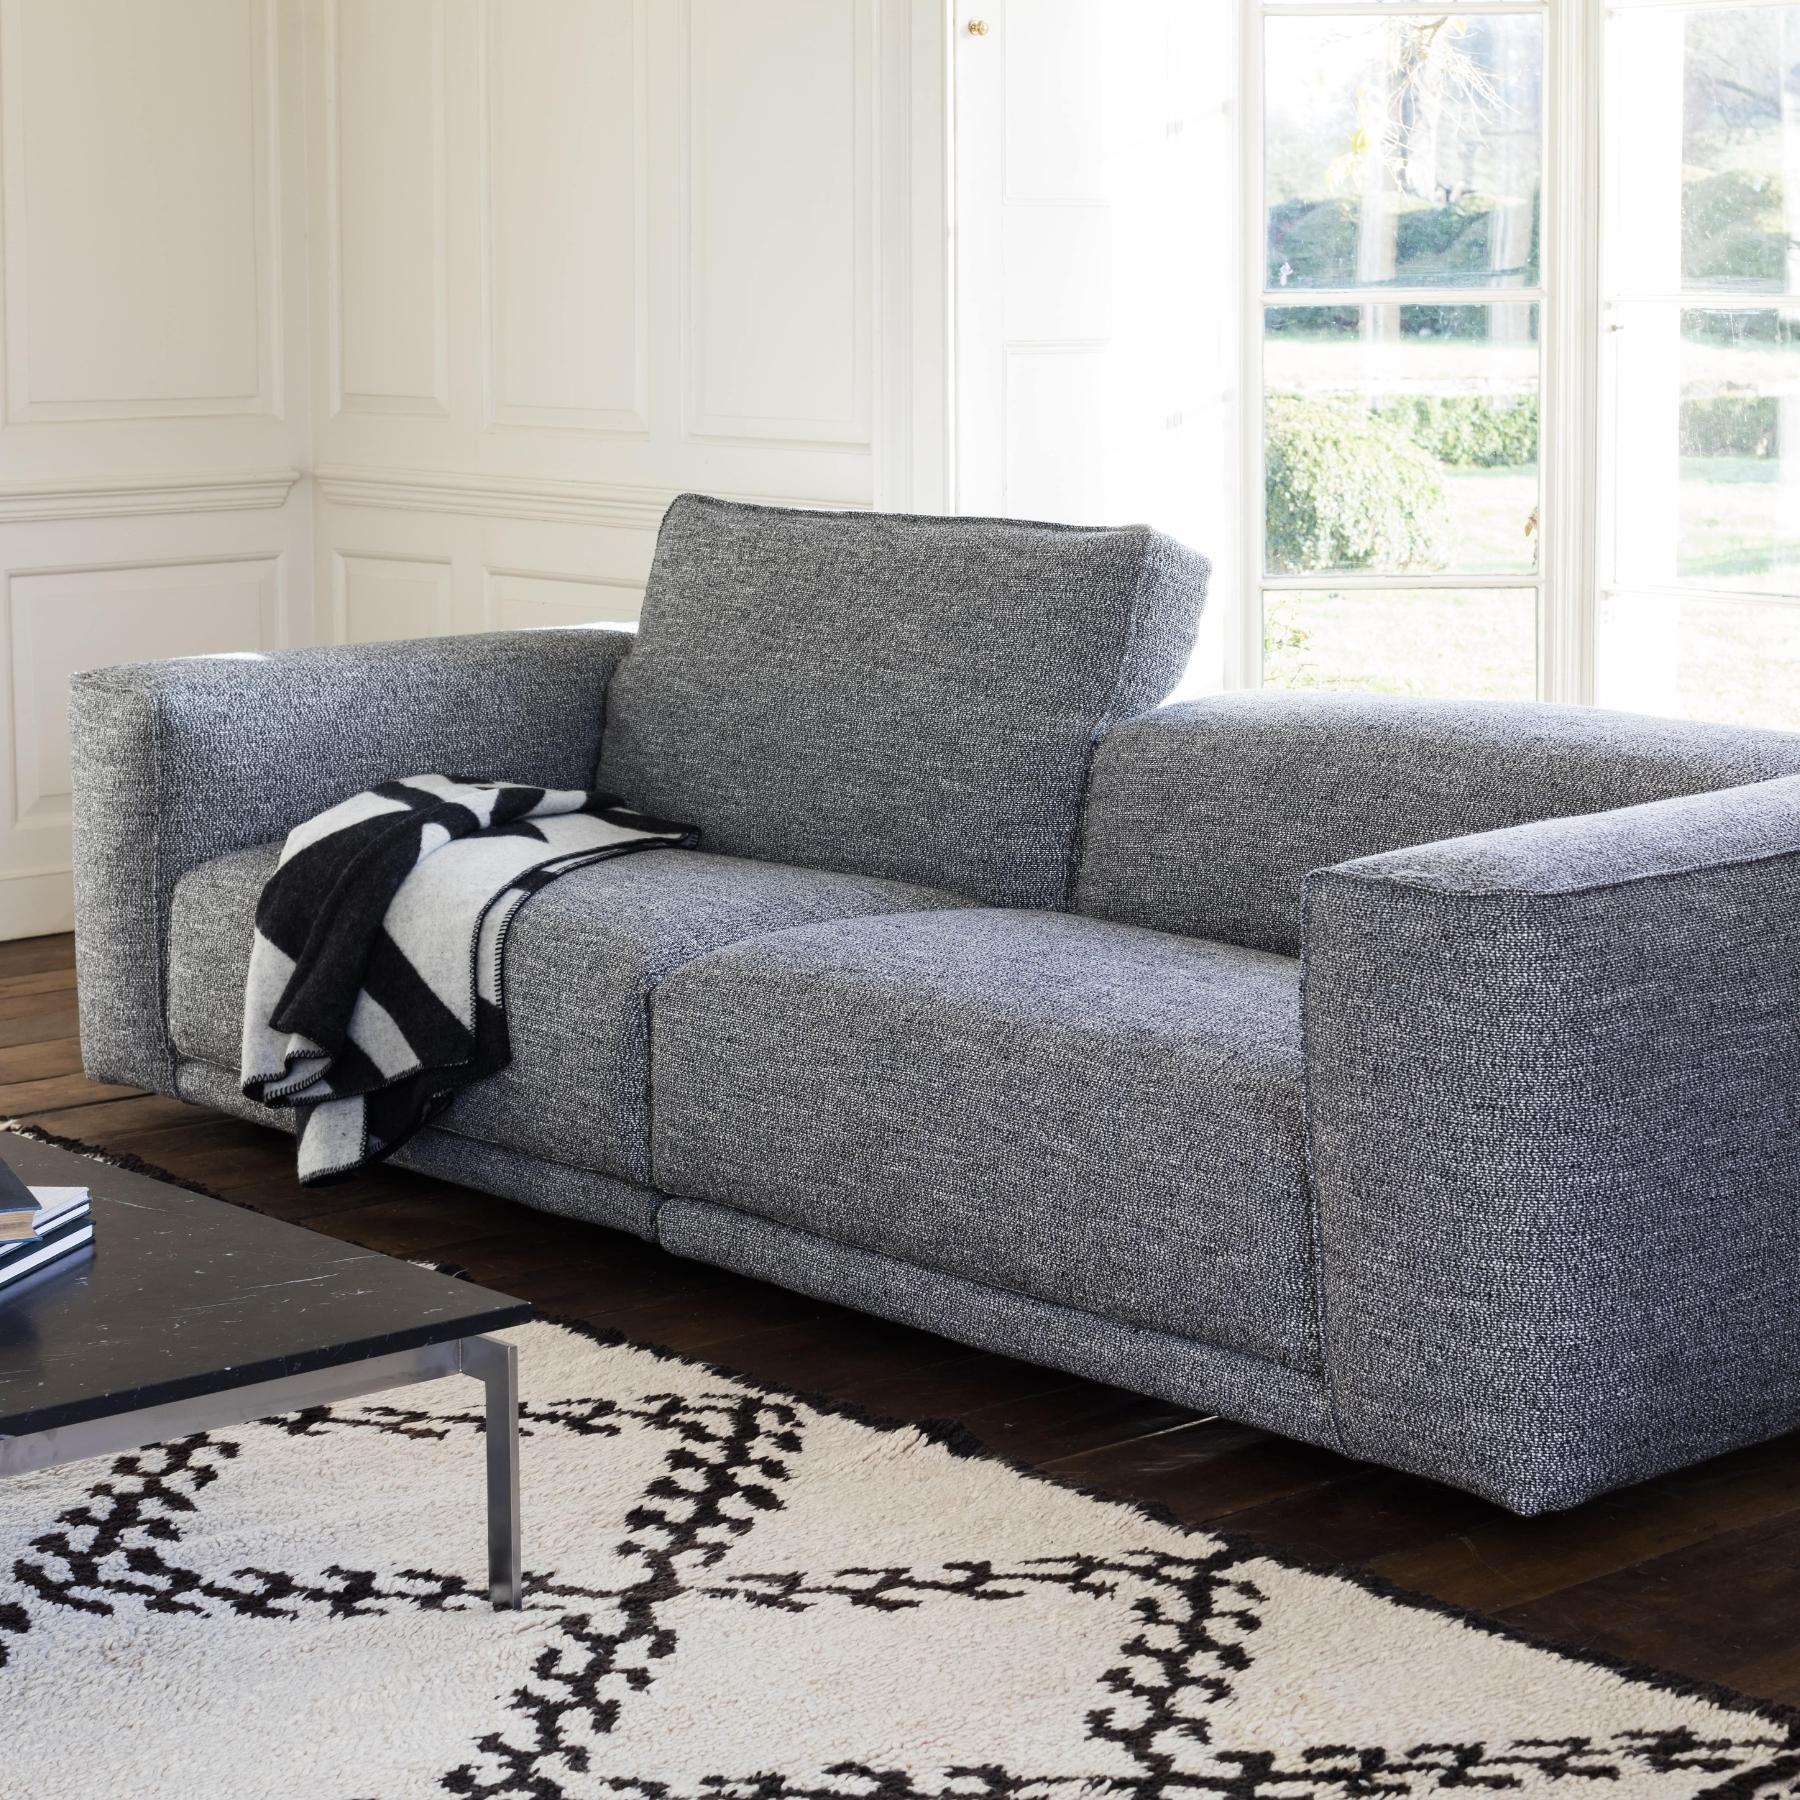 Kelston Sofa 240 cm | Fabric